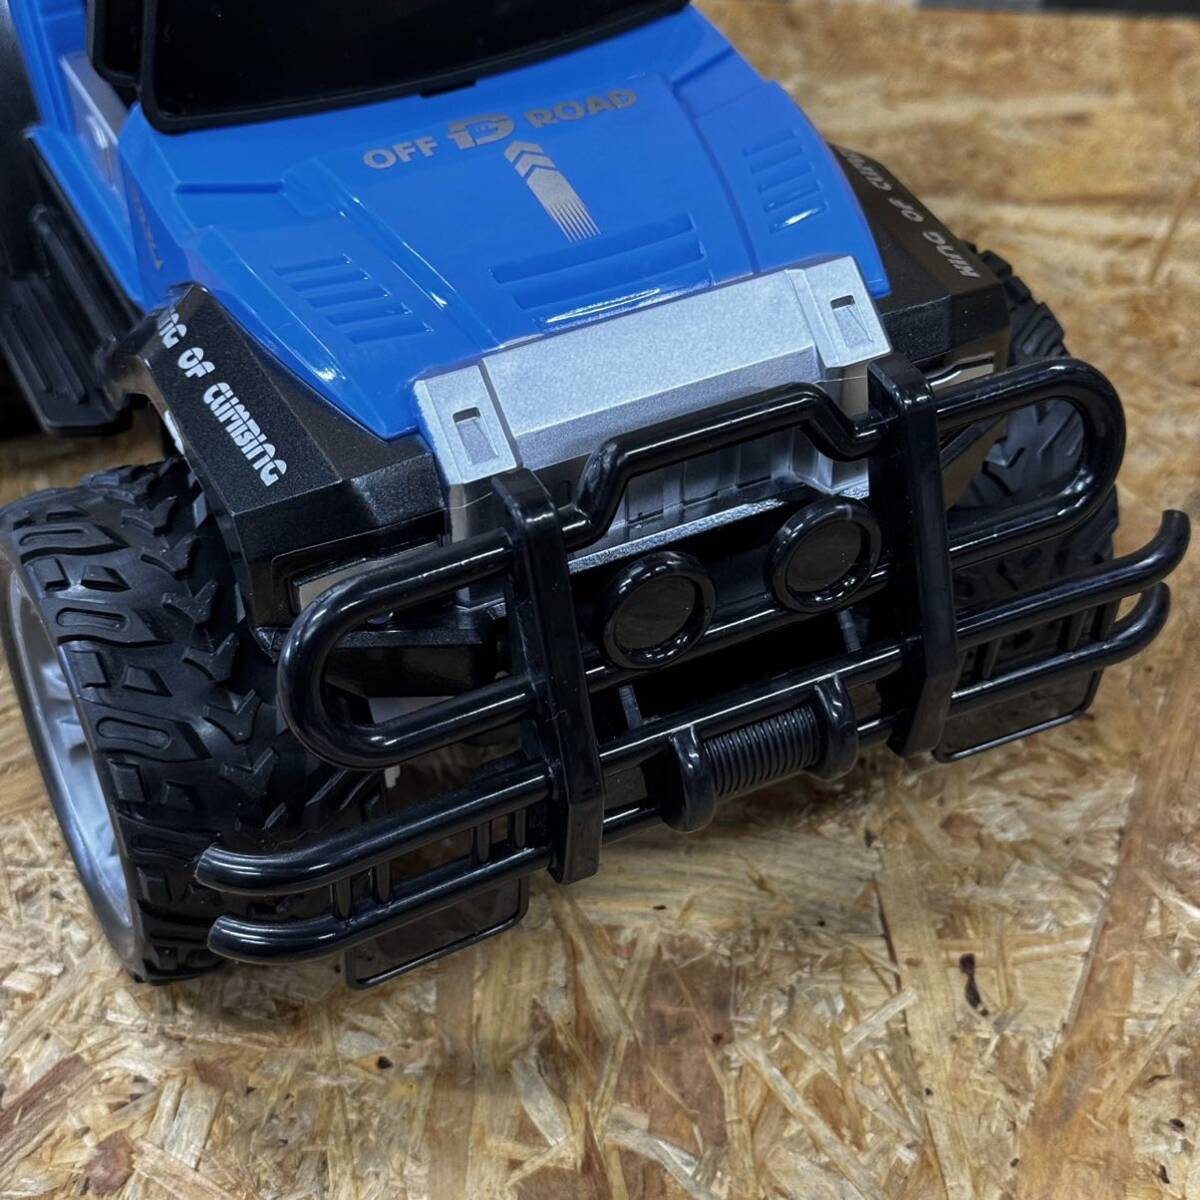 DEERC ラジコン ラジコンカー オフロード 男の子 rc car ジープ 玩具 車 リモコンカー 操作時間80分 デモモード LEDライト付き 2.4GHz_画像6